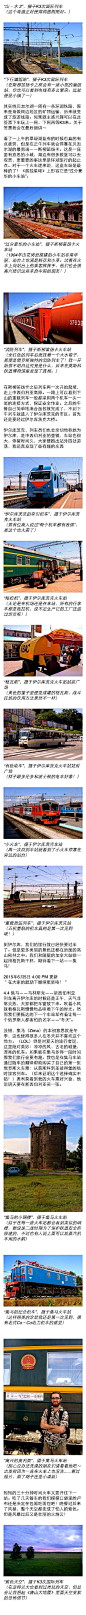 「有人坐过那趟北京到莫斯科的列车吗？」太棒了，这才是真正的火车旅行，好想尝试一次。 先收了！ ​​​​